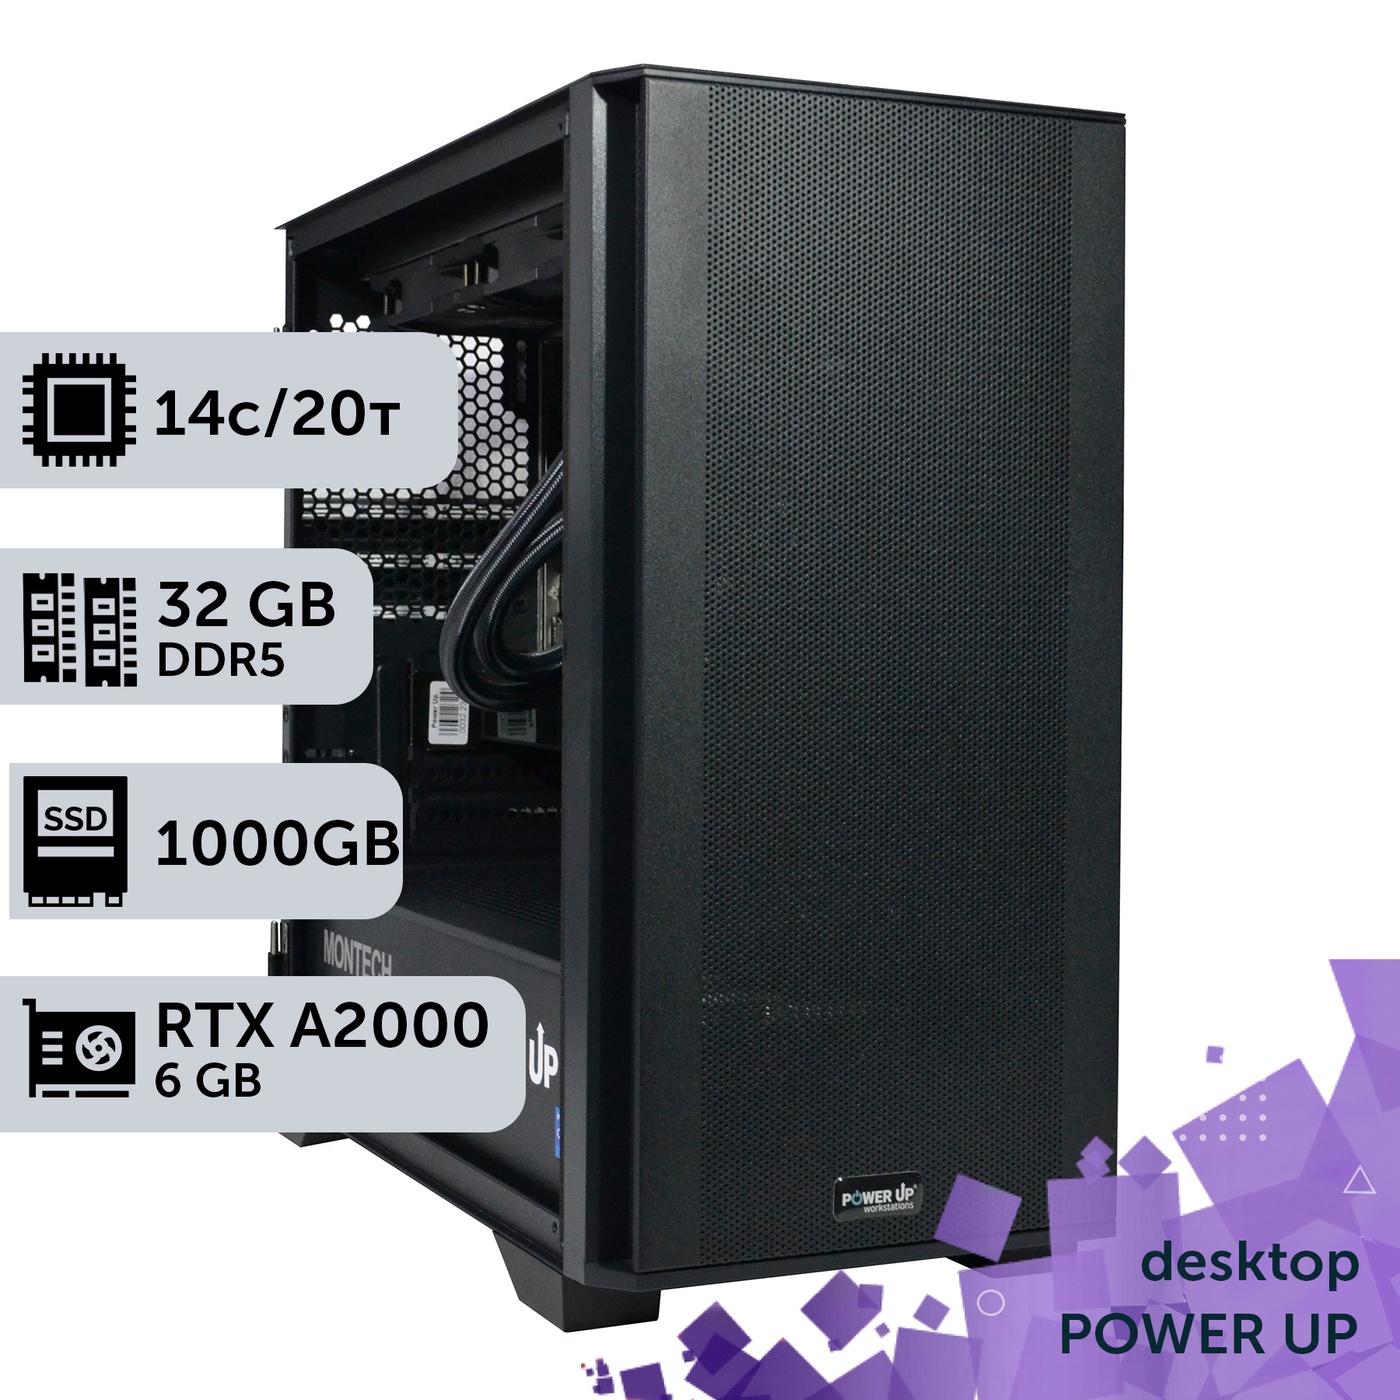 Рабочая станция PowerUp Desktop #342 Core i5 14500F/32 GB/SSD 1TB/NVIDIA Quadro RTX A2000 6GB